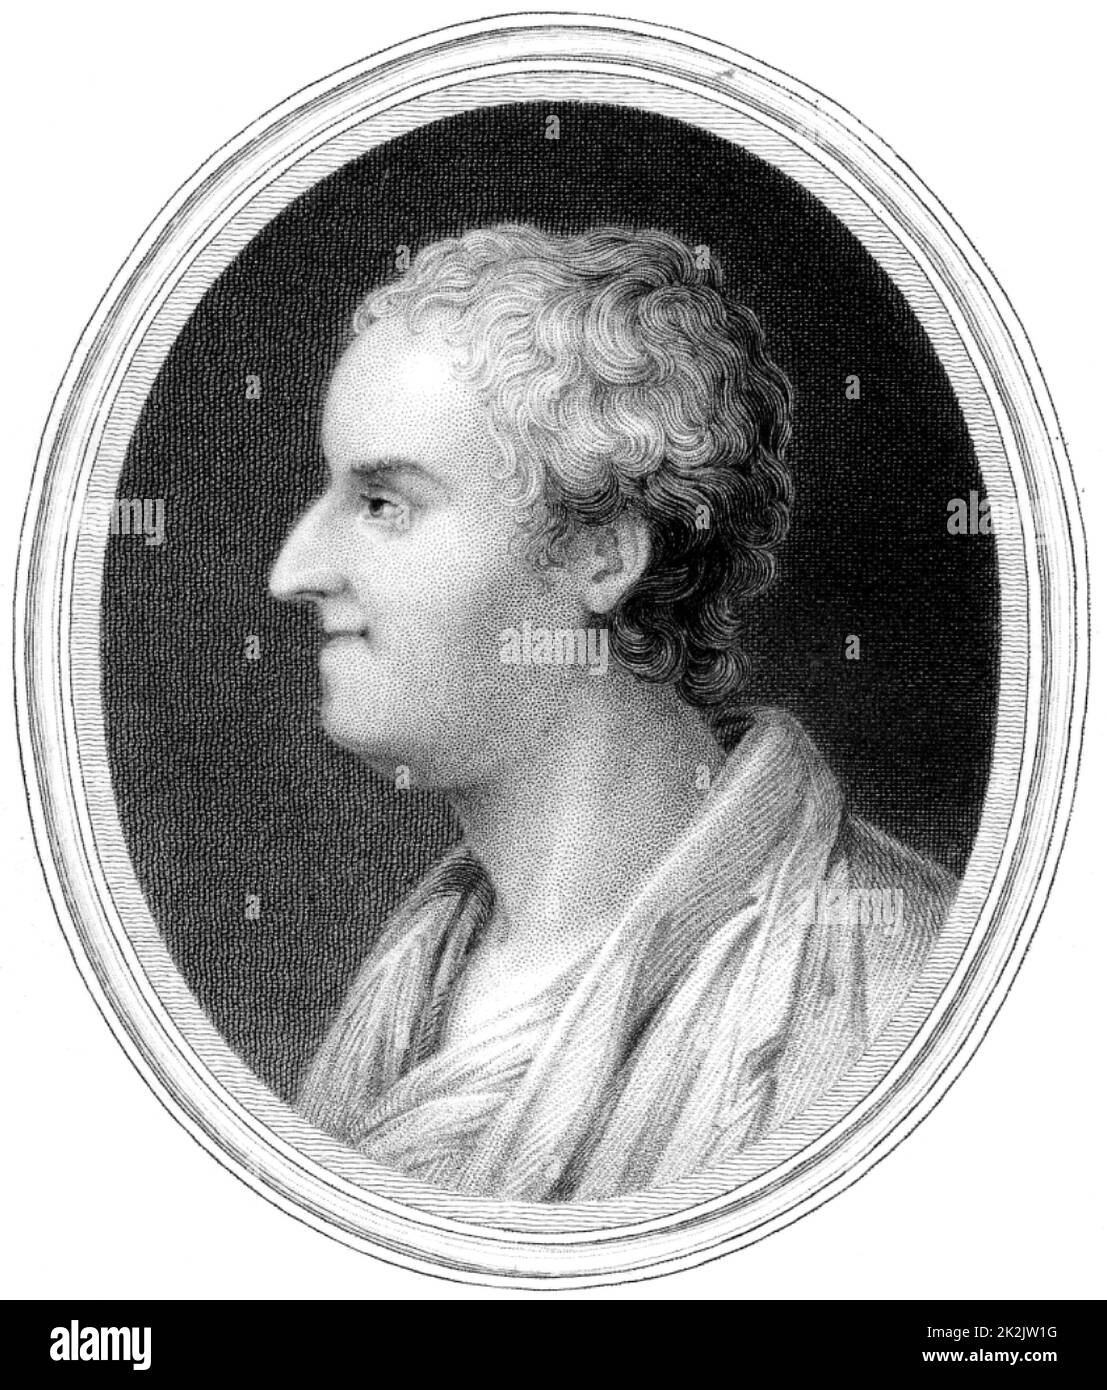 Thomas Gray (1716-1771) poeta inglese e studioso di musica classica. Incisione, Londra, 1837. Foto Stock